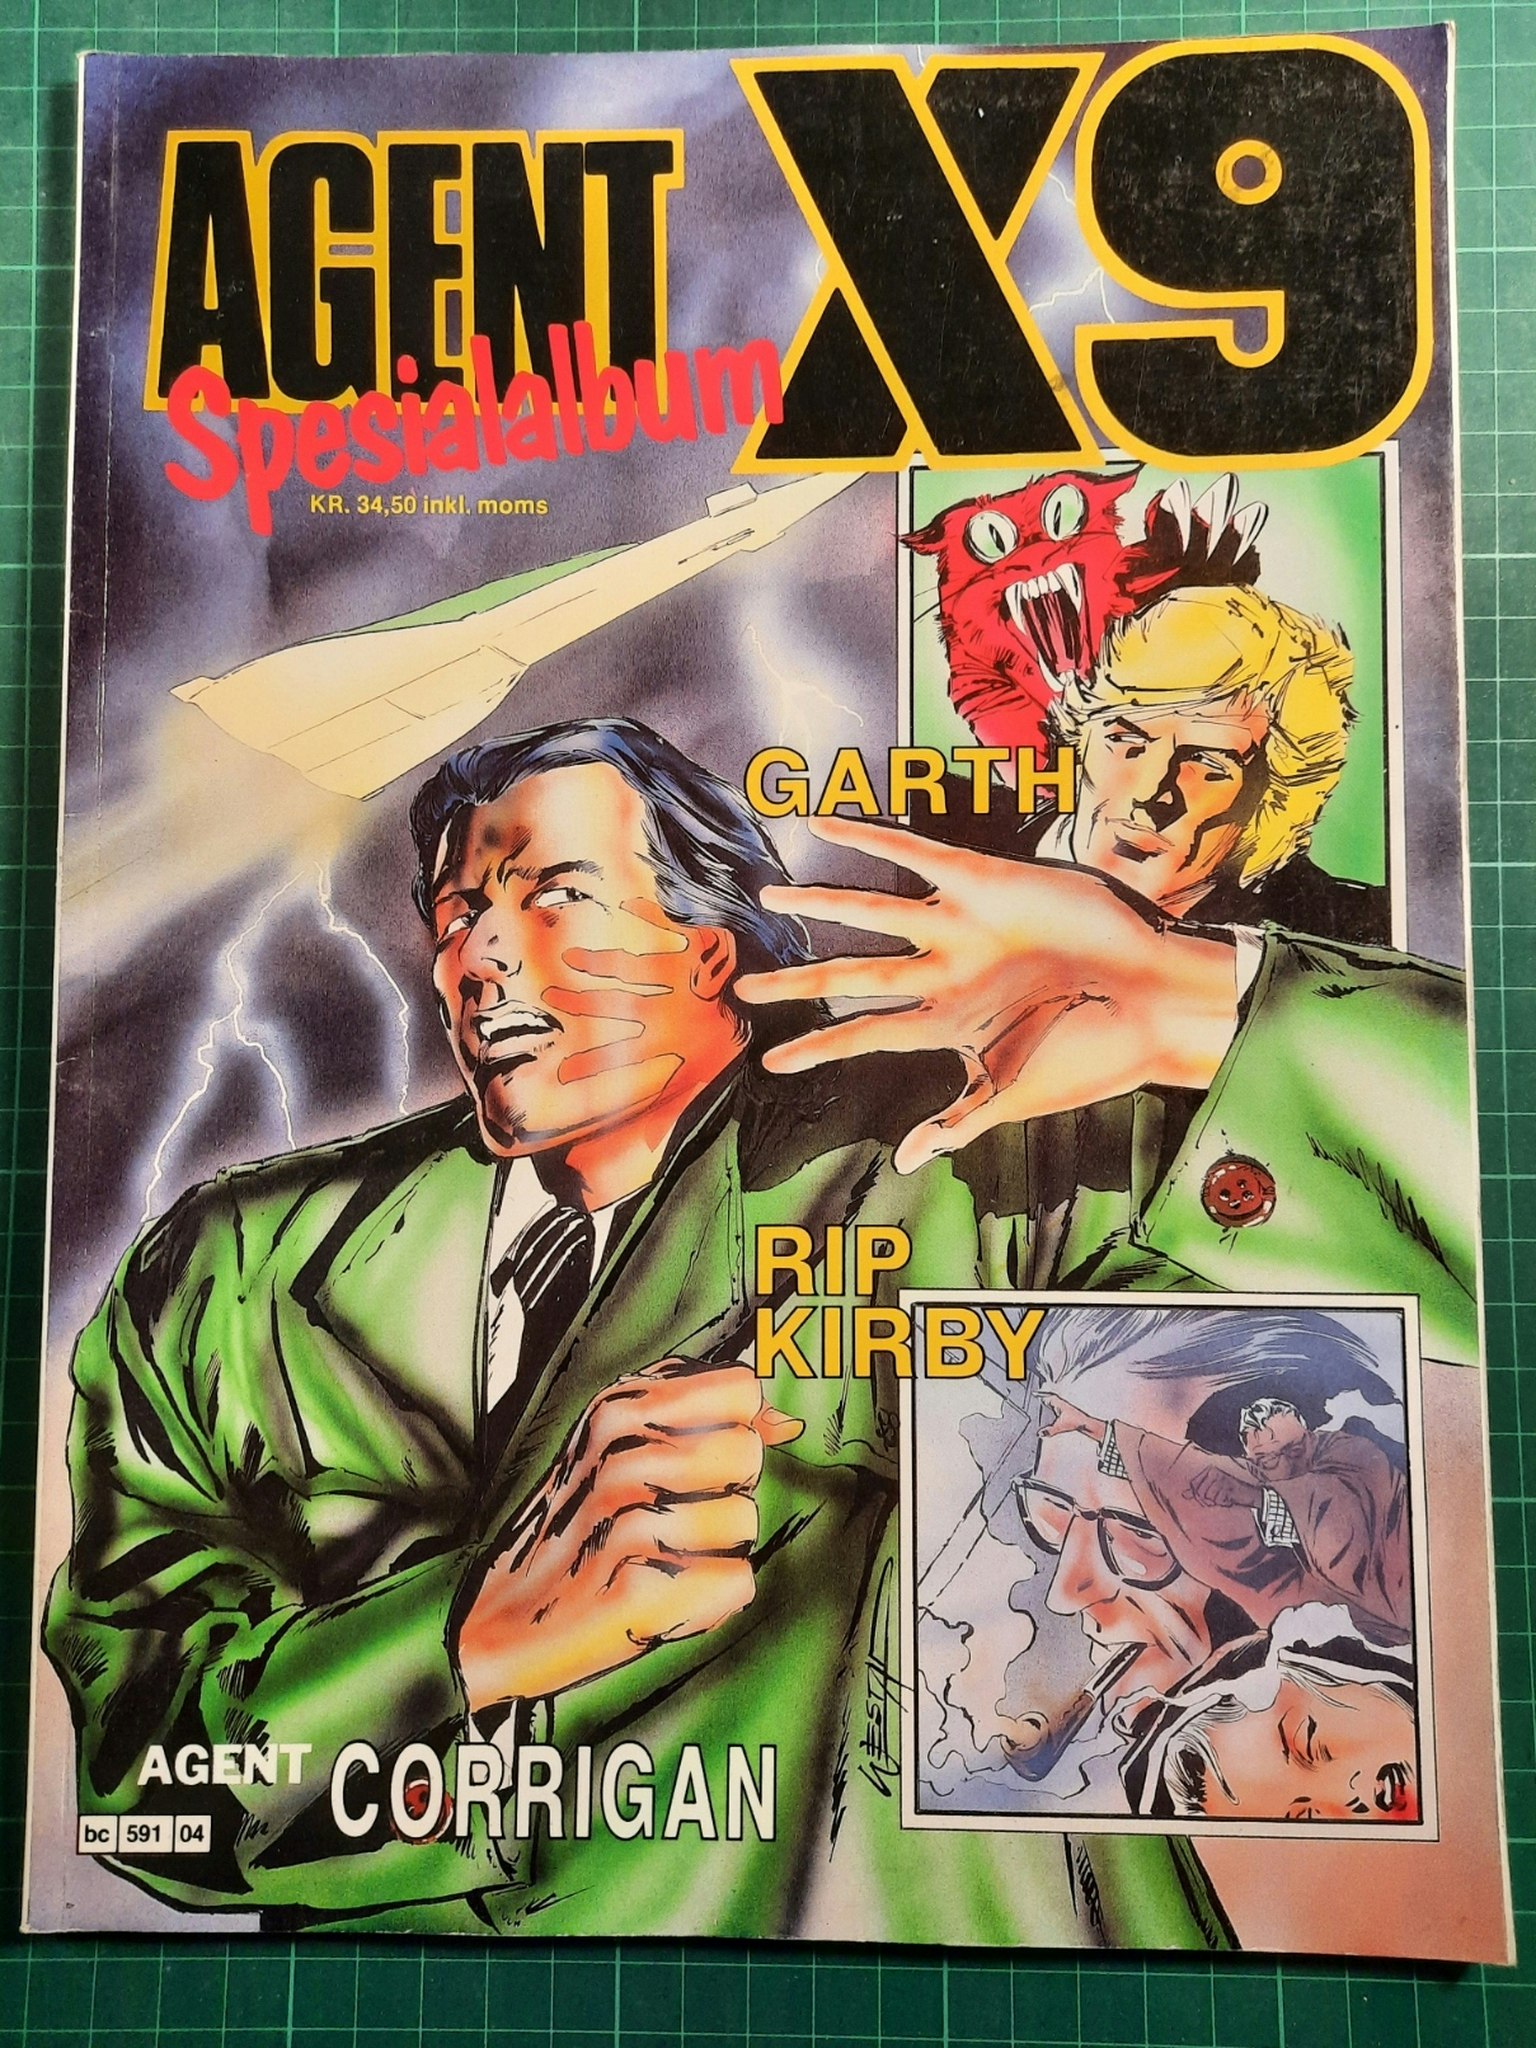 Agent X9 spesialalbum 1988